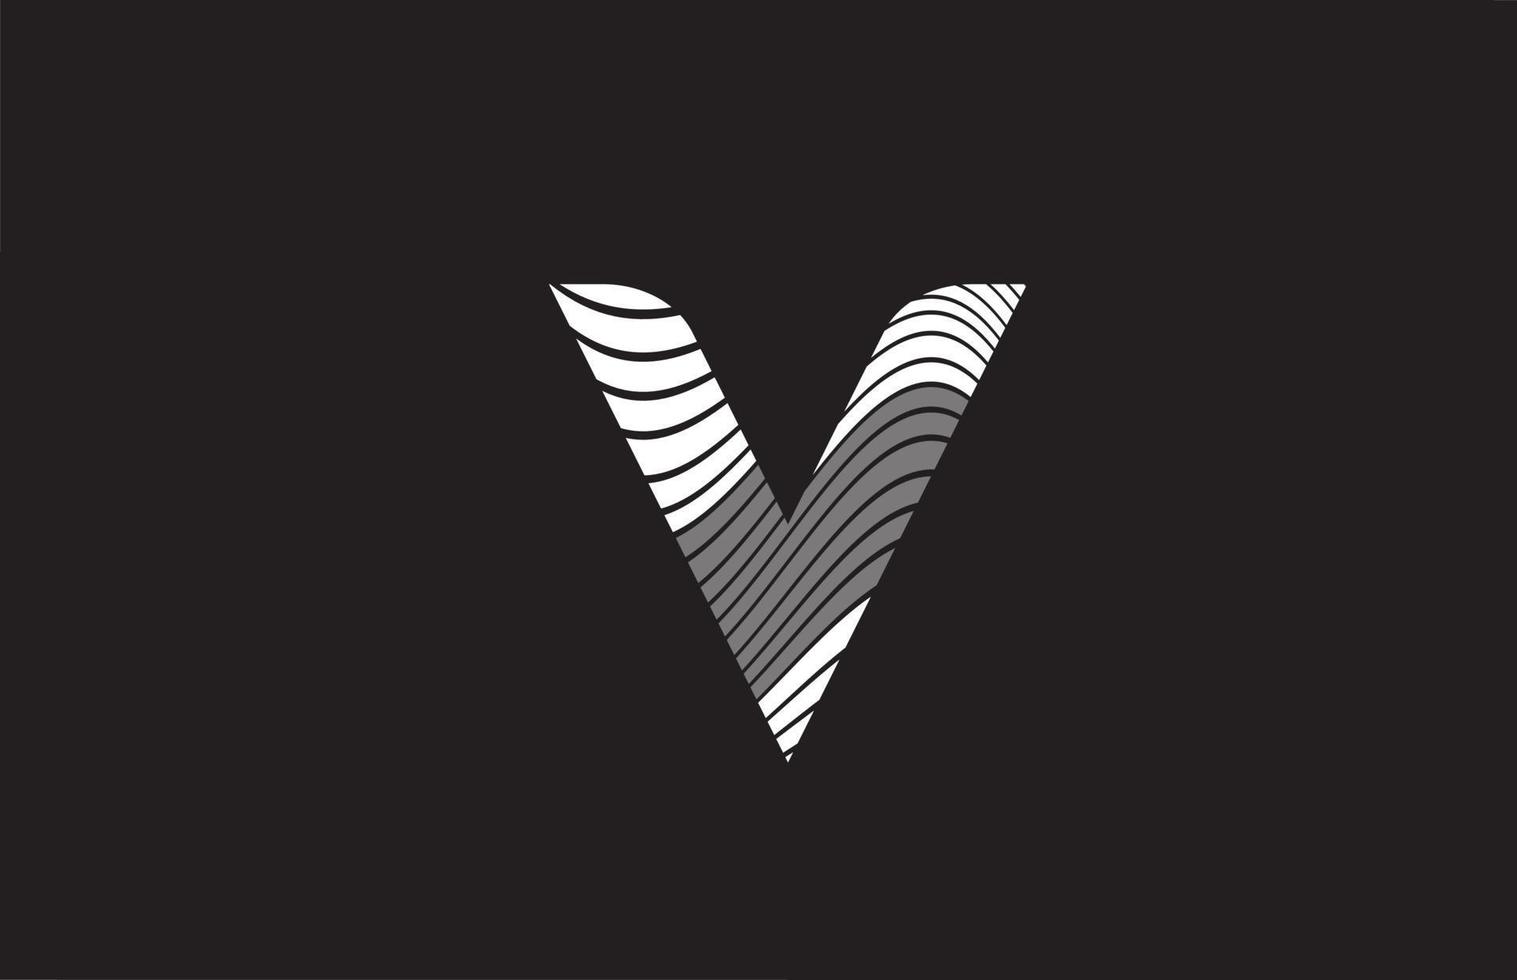 zwarte en witte lijnen v alfabet letter pictogram logo ontwerp. creatieve sjabloon voor bedrijven vector